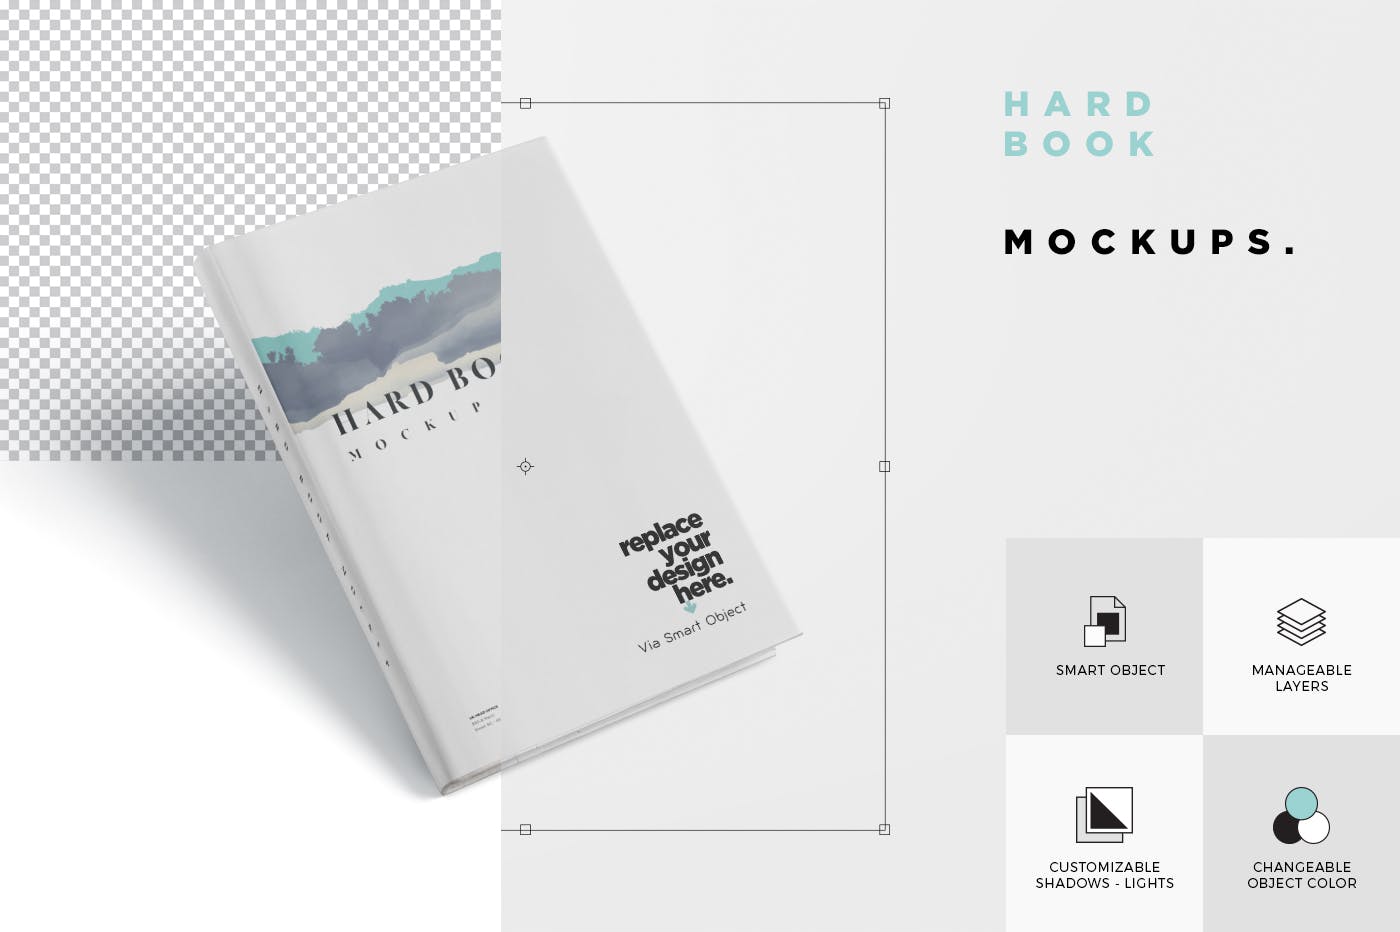 精装硬封图书封面设计效果图样机 Hard Book Mockups插图(6)